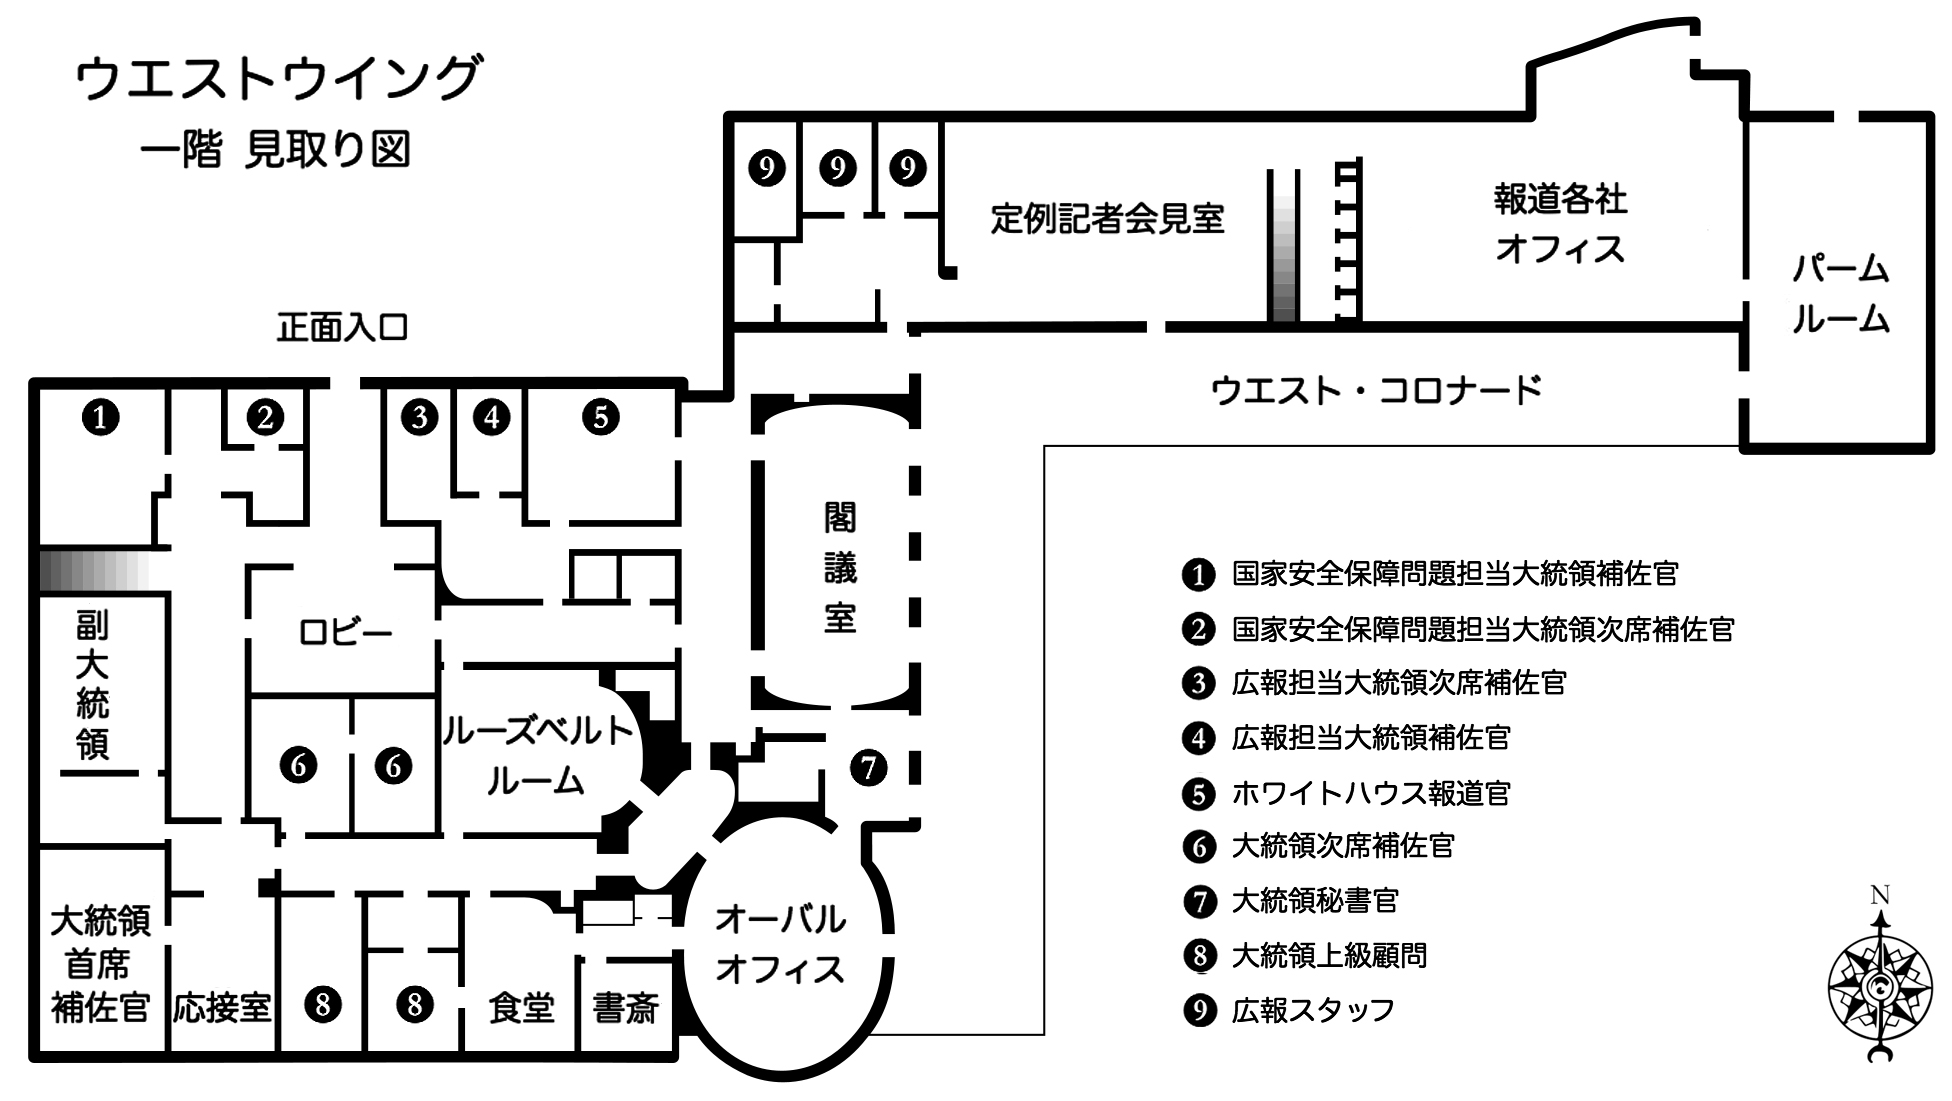 File White House West Wing Floor Plan 1st Flr Japanese Jpg Wikimedia Commons